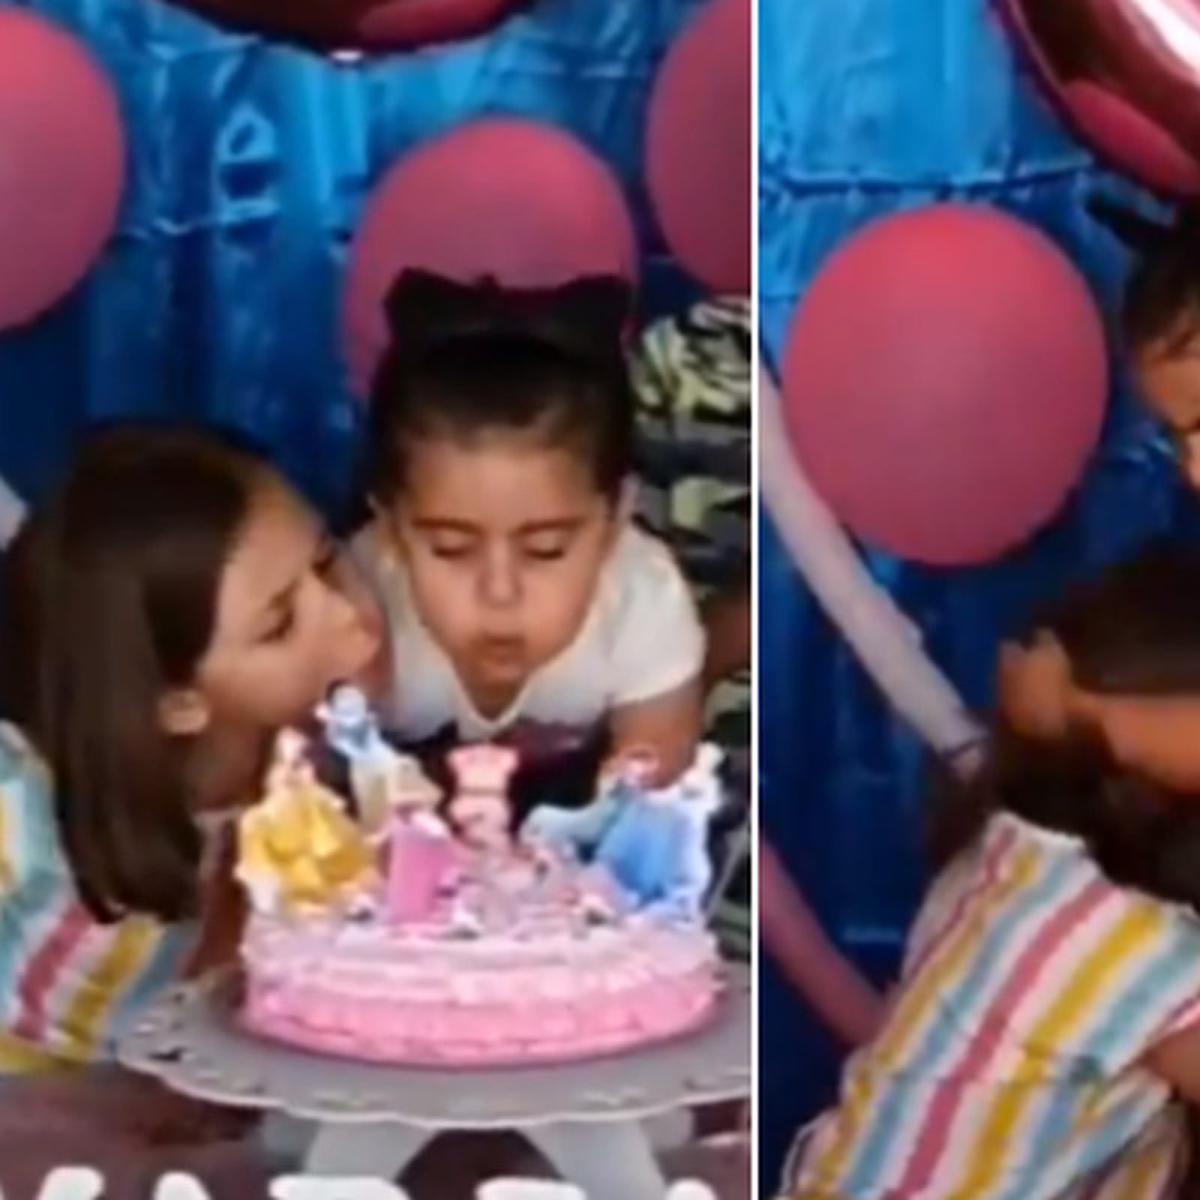 TikTok viral: Niño apaga las velas de su torta de cumpleaños de una curiosa  manera en plena cuarentena, video, viral, redes sociales, Estados  Unidos, Tendencias